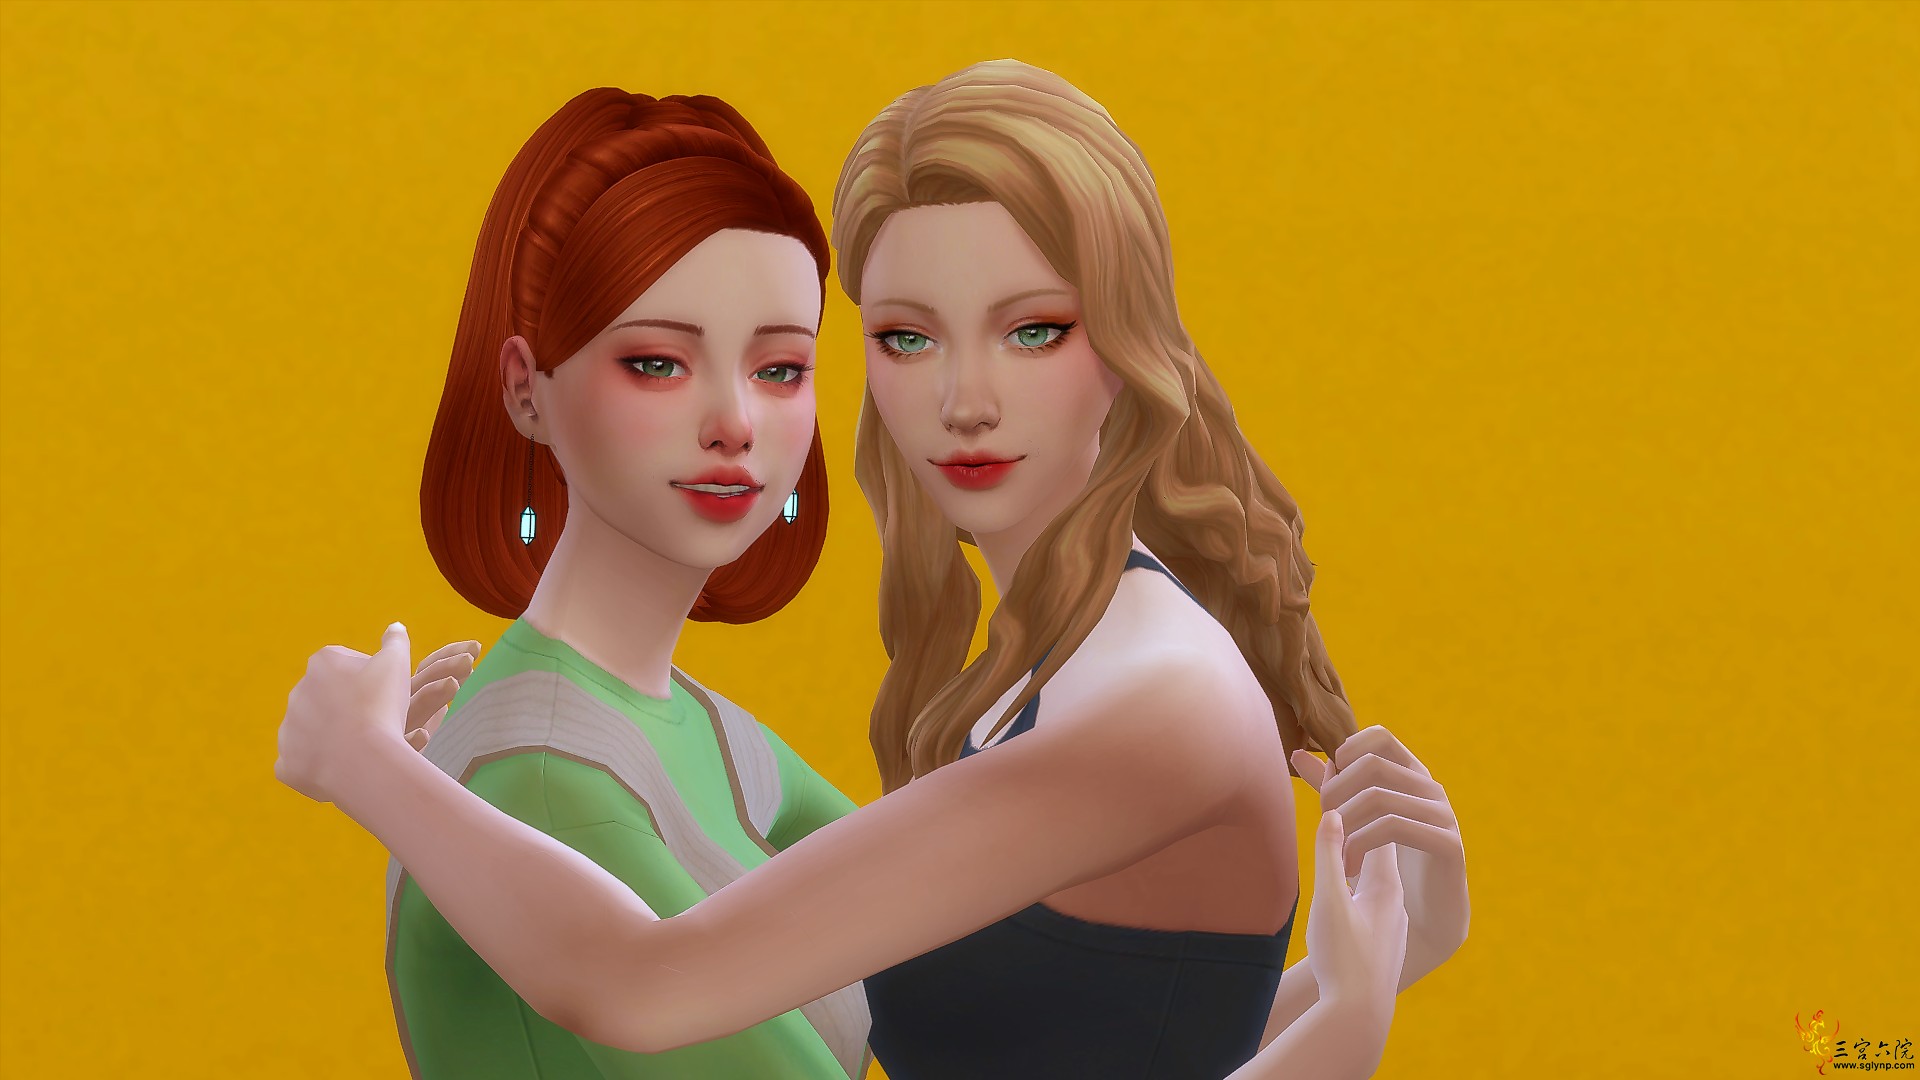 Sims 4 Screenshot 2020.11.19 - 20.31.39.65.png